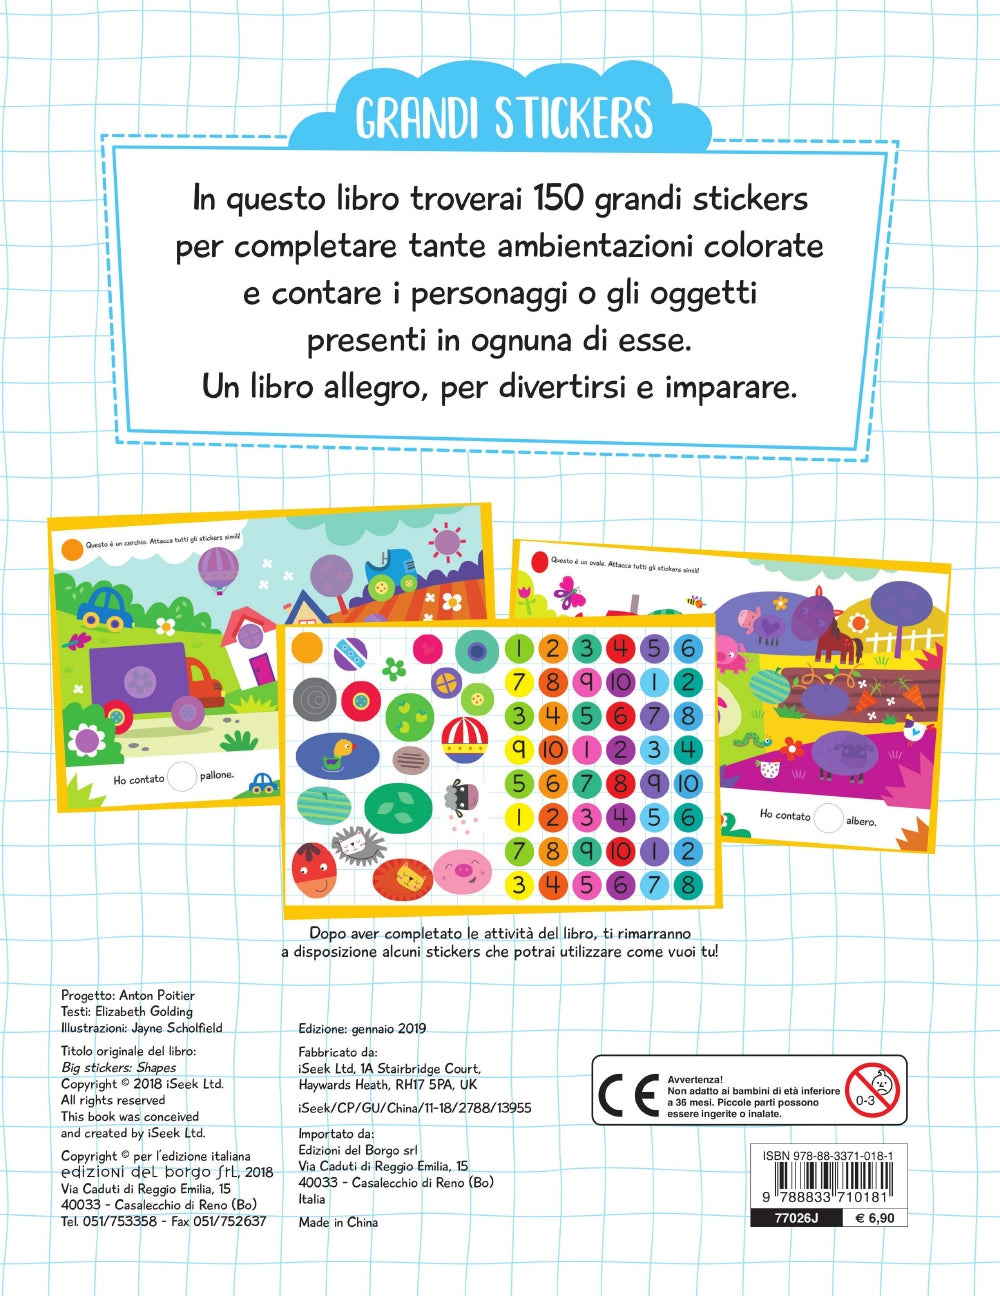 Grandi Stickers - Forme. Con 150 stickers